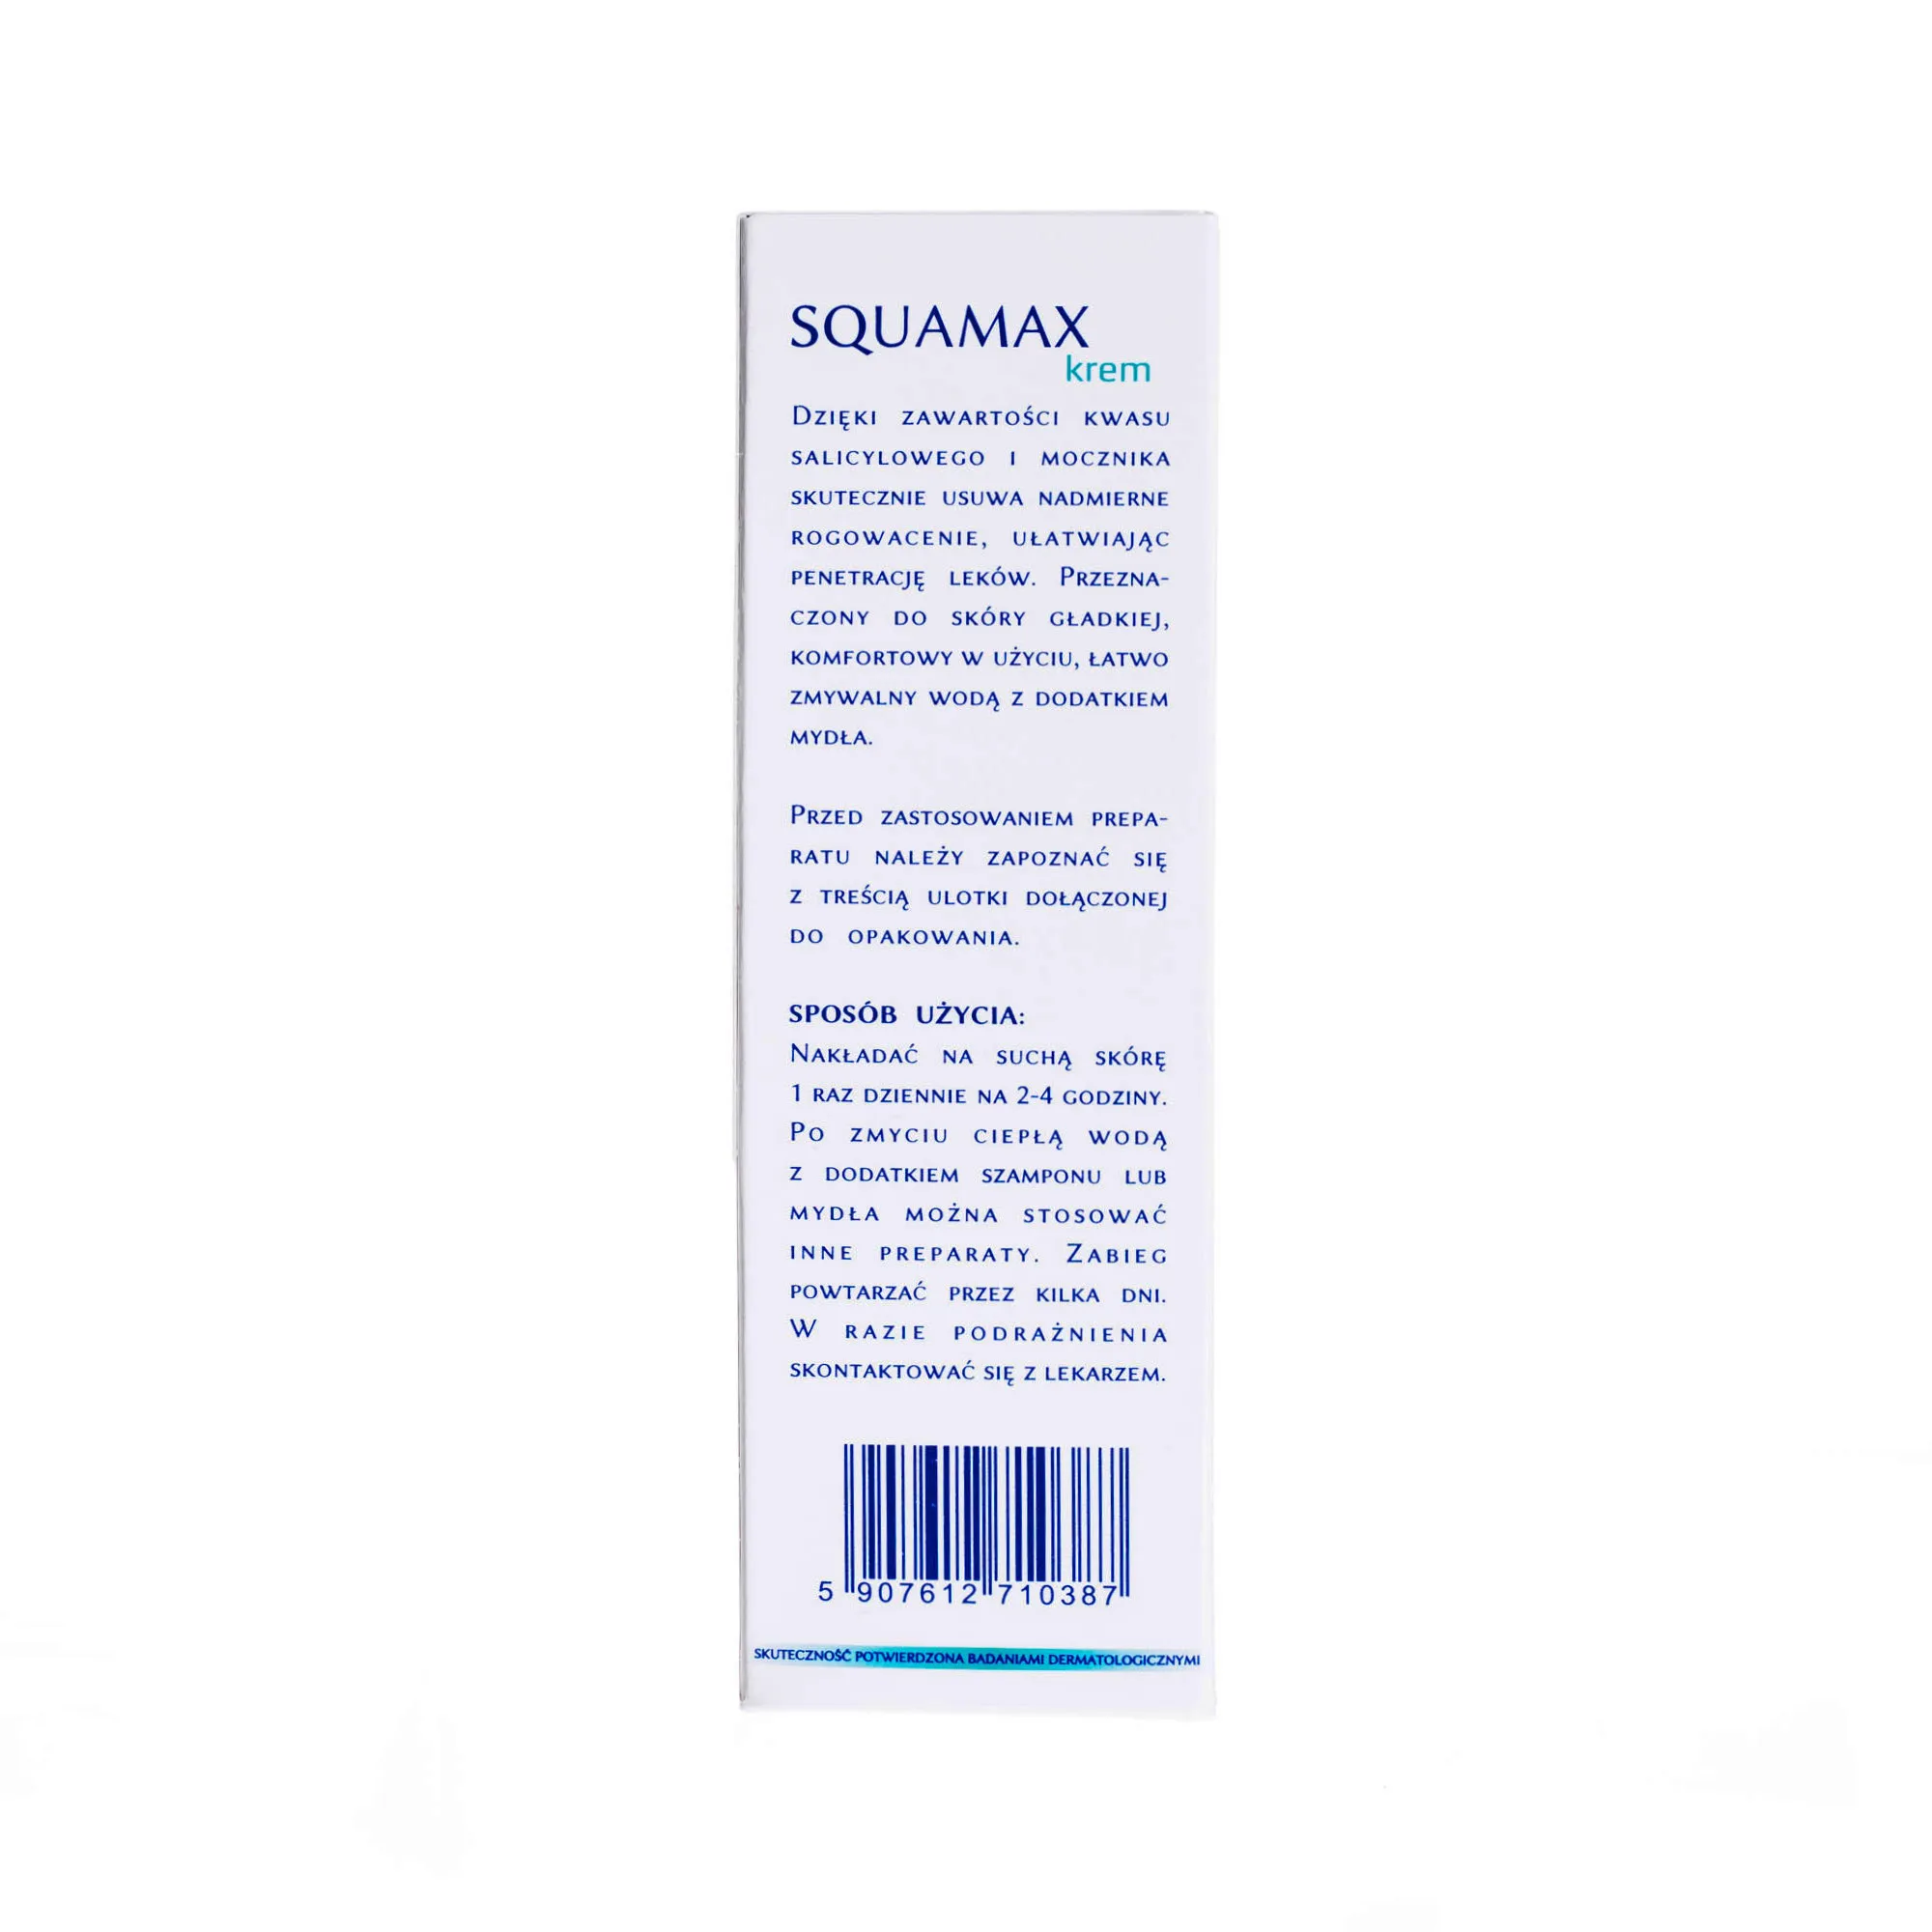 Squamax, krem salicylowo-mocznikowy do stosowania na gładką skórę, 100ml 